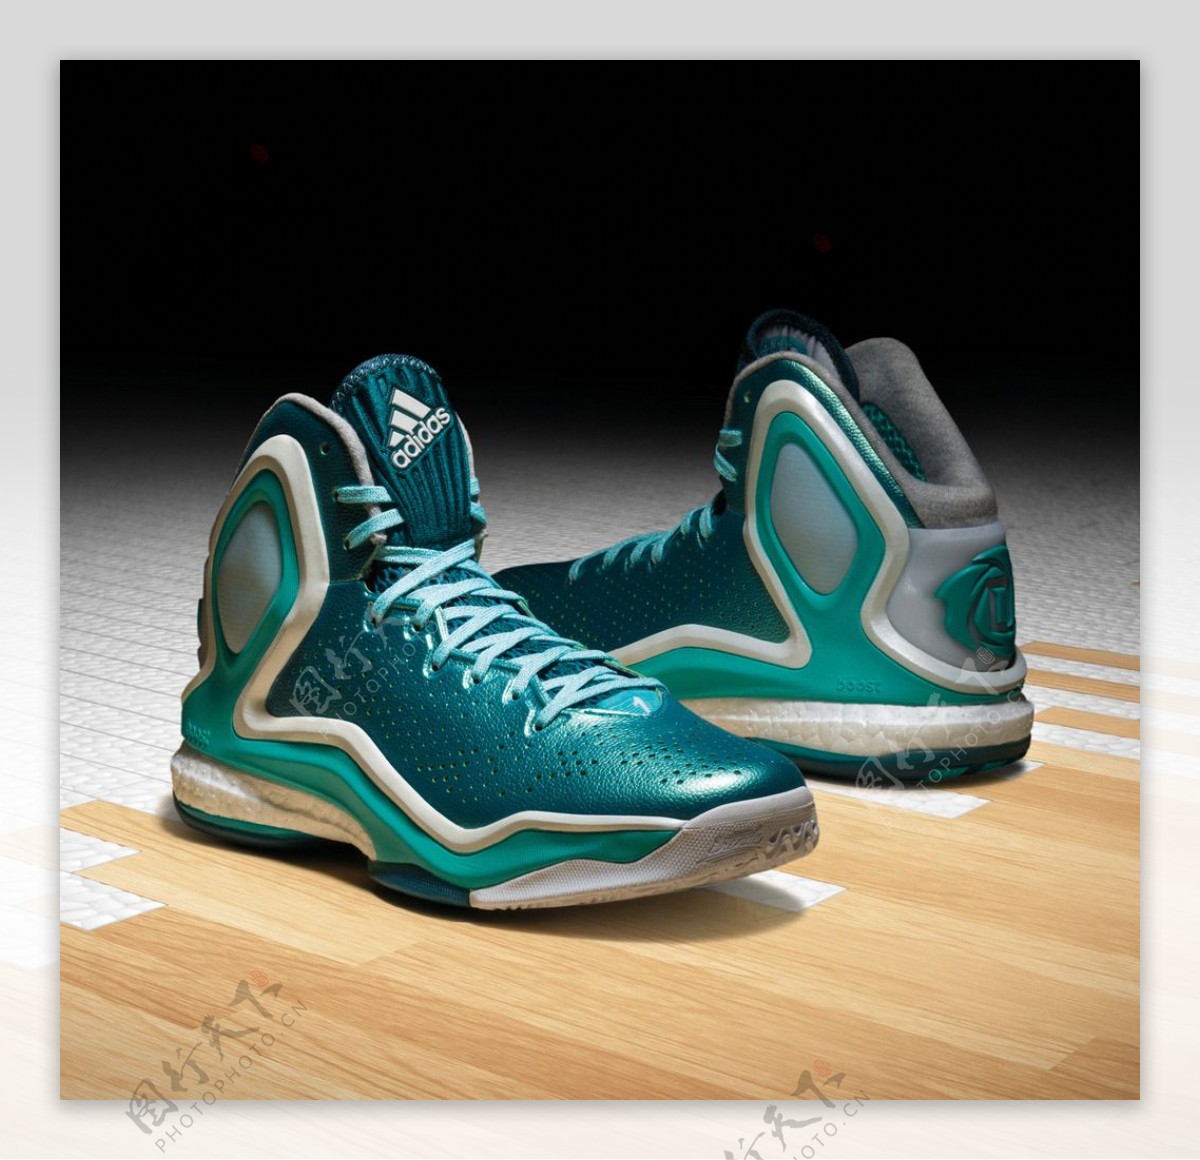 ADIDAS专业篮球鞋广告图片